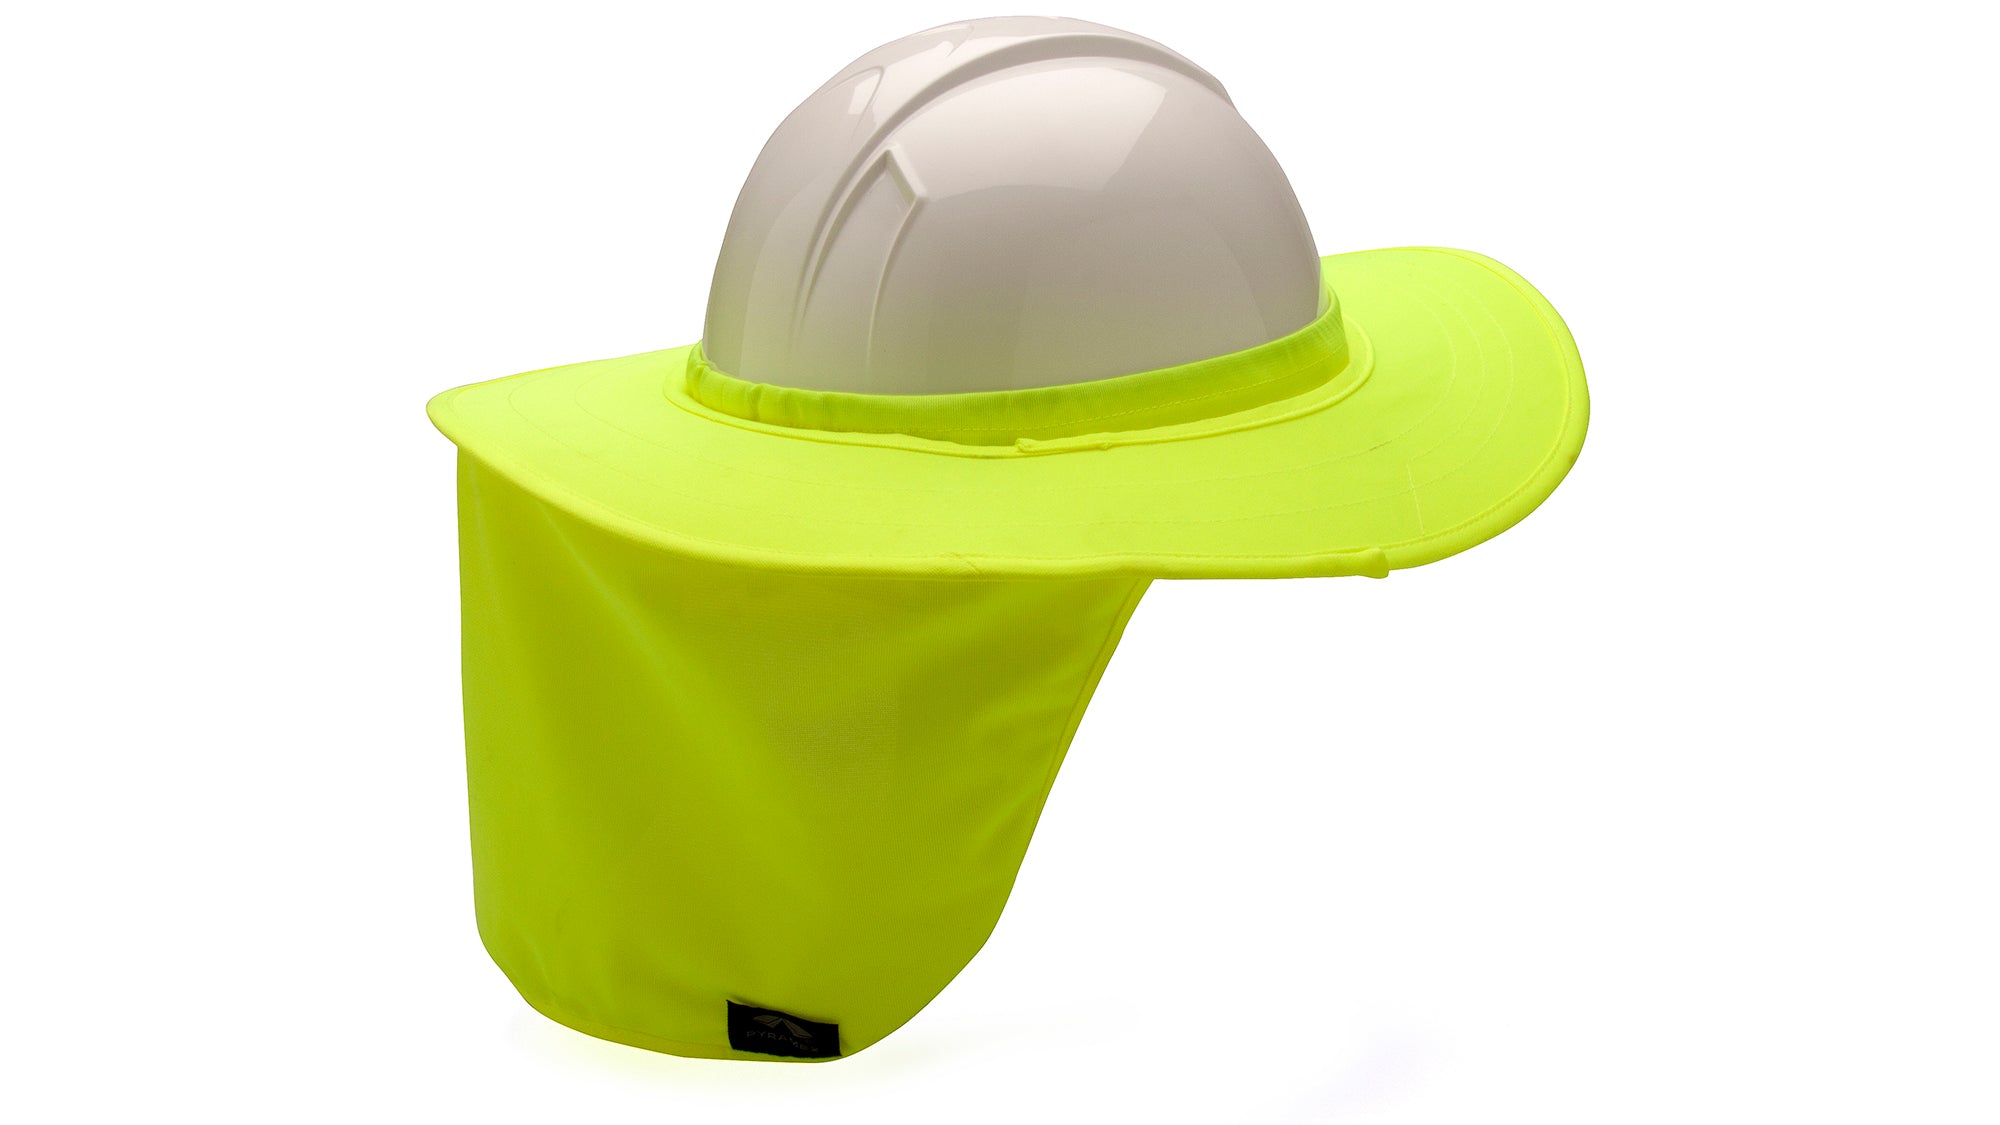 Pyramex Hard Hat Brim With Neck Shade - Work World - Workwear, Work Boots, Safety Gear